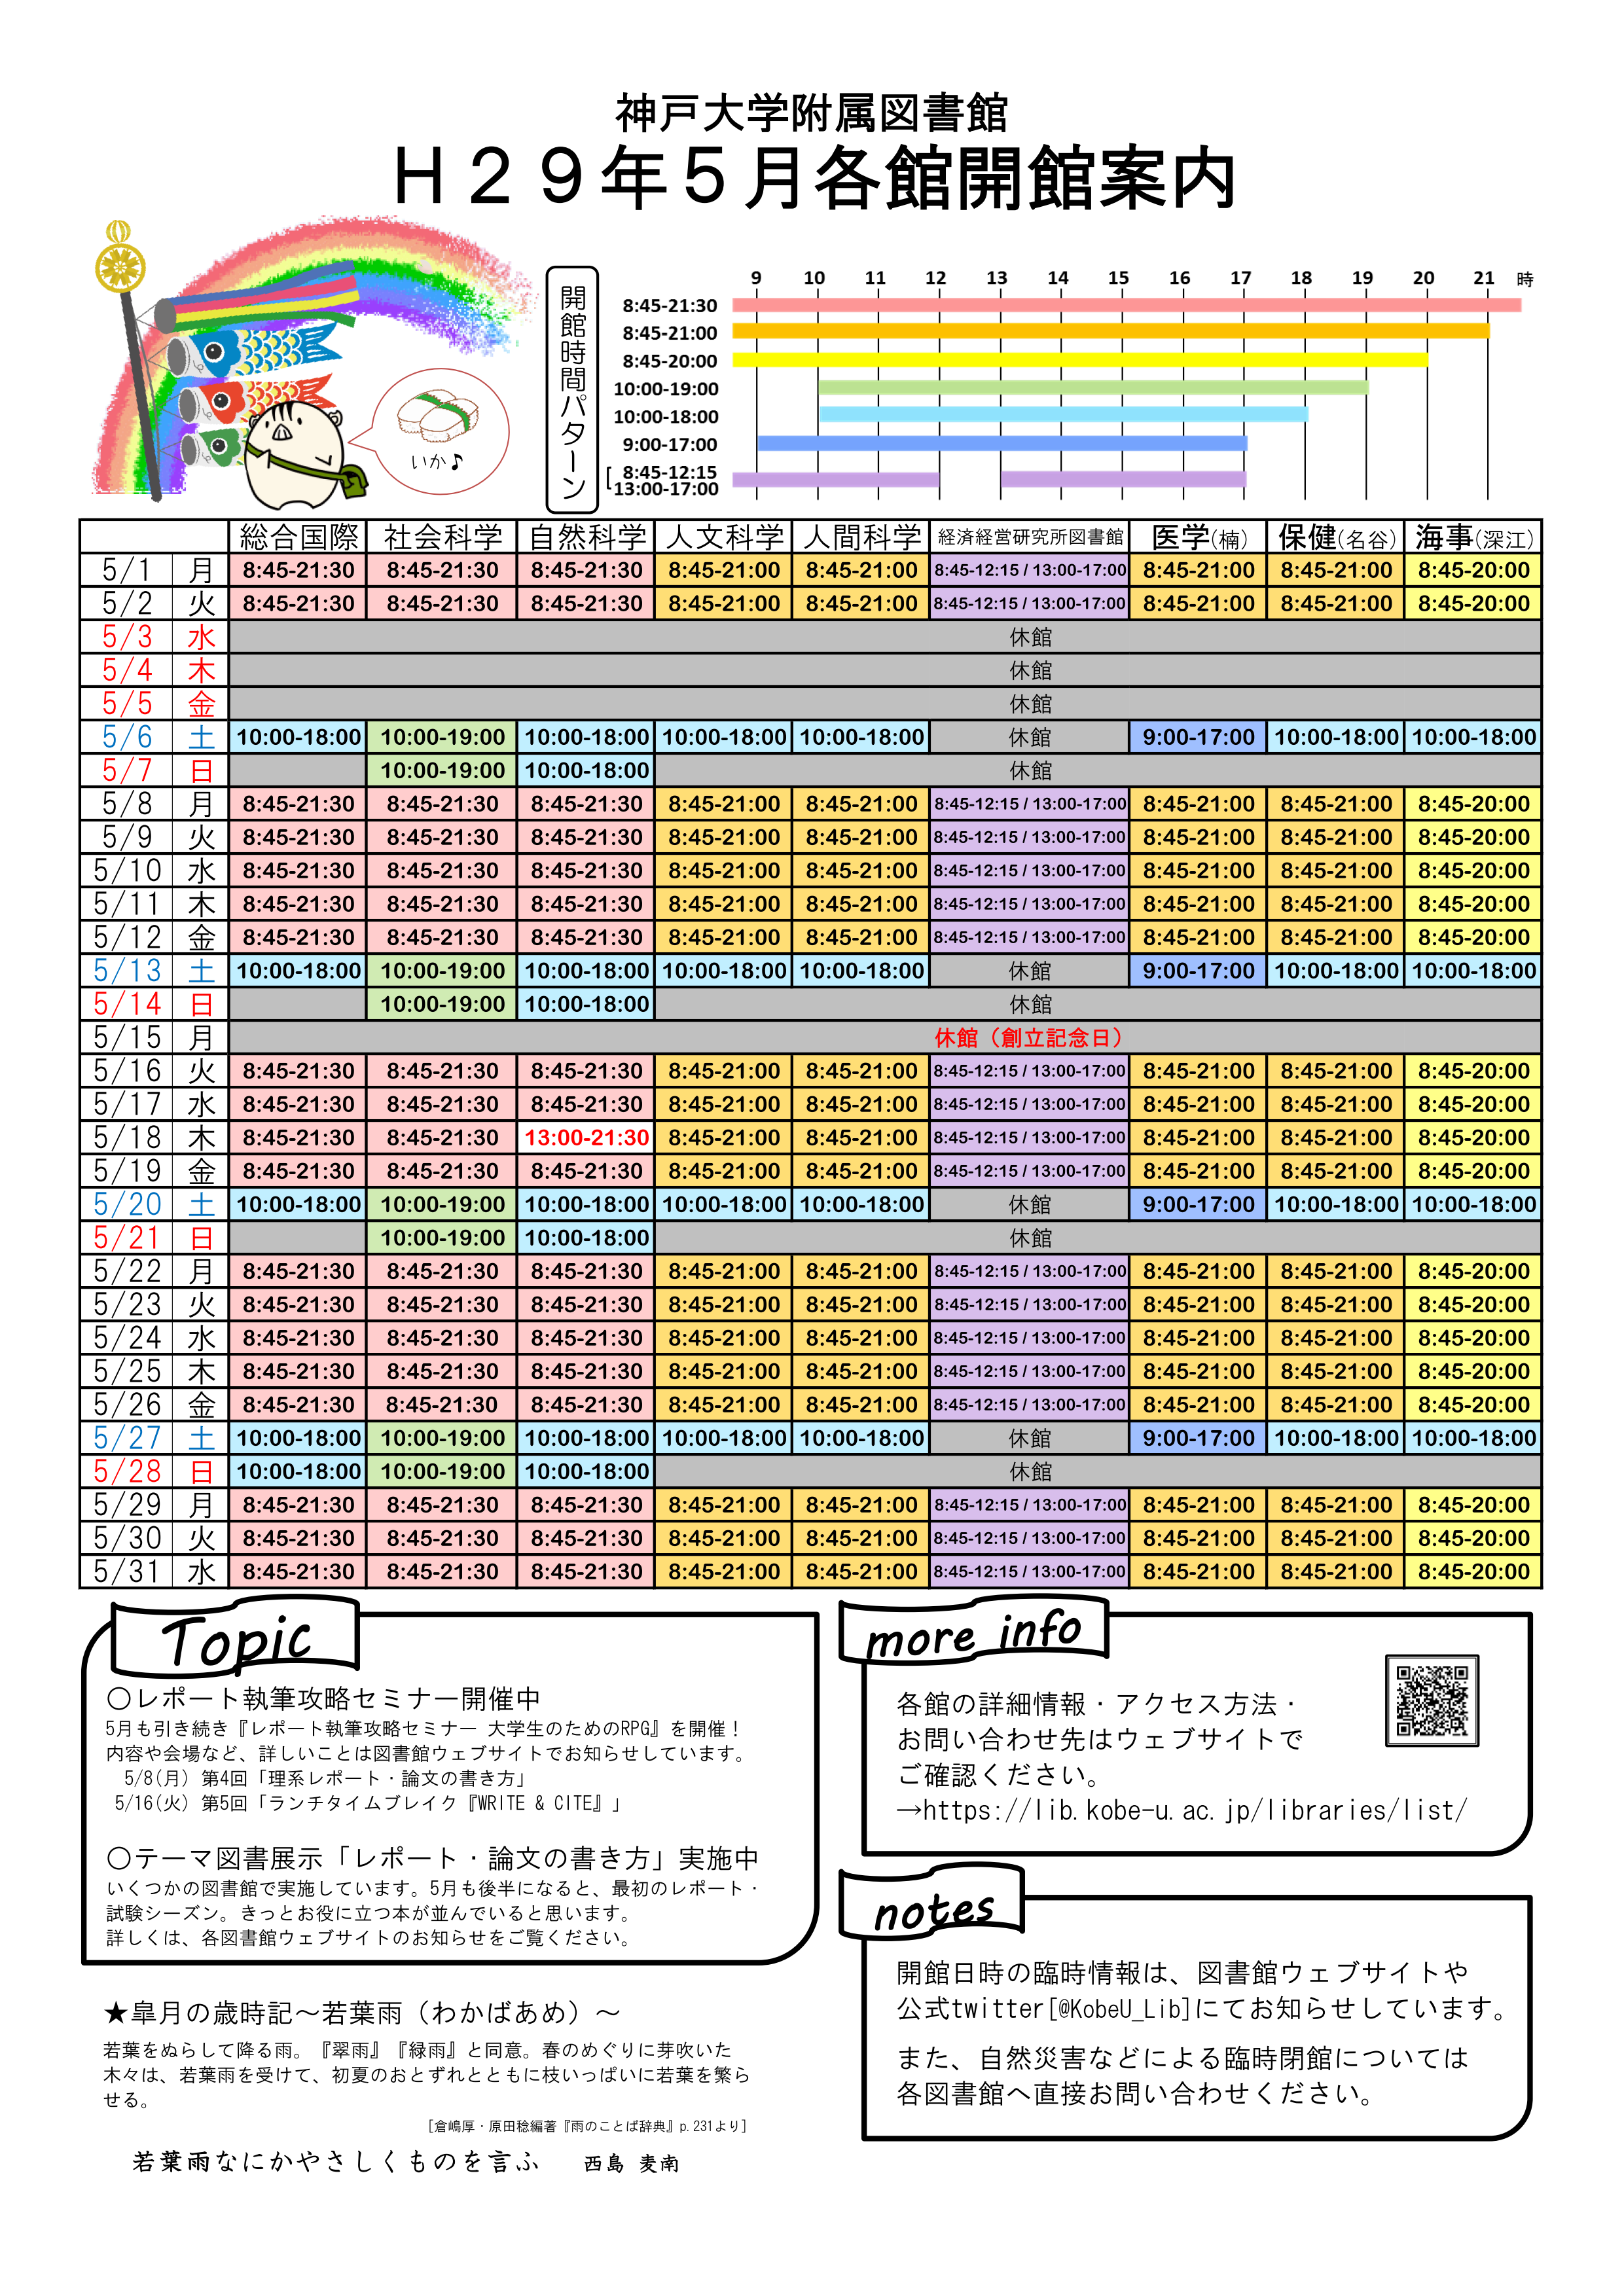 2017年5月の全館開館カレンダーを作成しました 神戸大学附属図書館